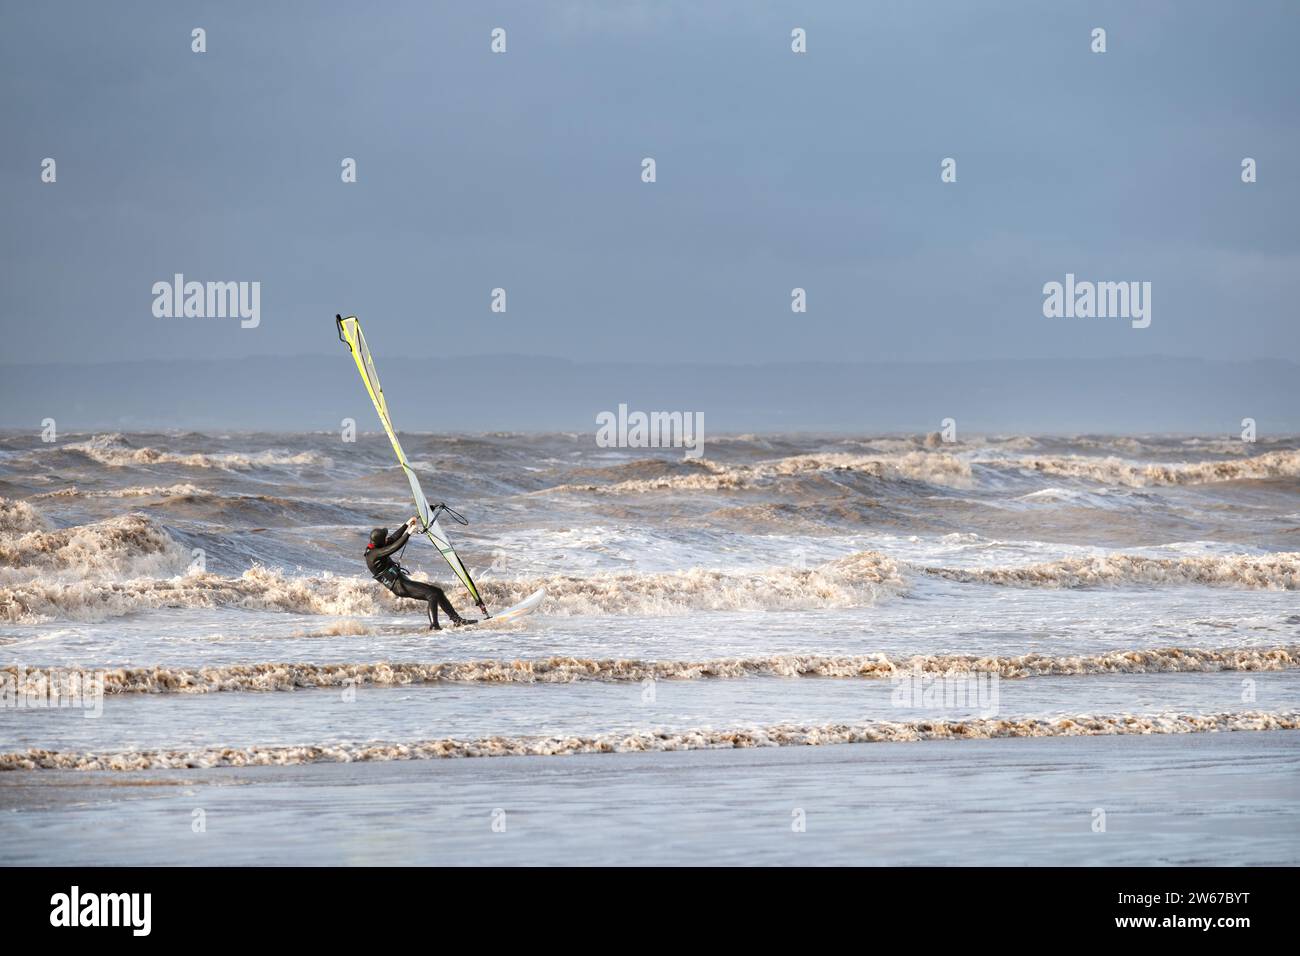 UK Weston super mare: Un surfista de viento lucha contra fuertes vientos y grandes olas mientras viaja a toda velocidad a lo largo del agua cerca de la costa Foto de stock